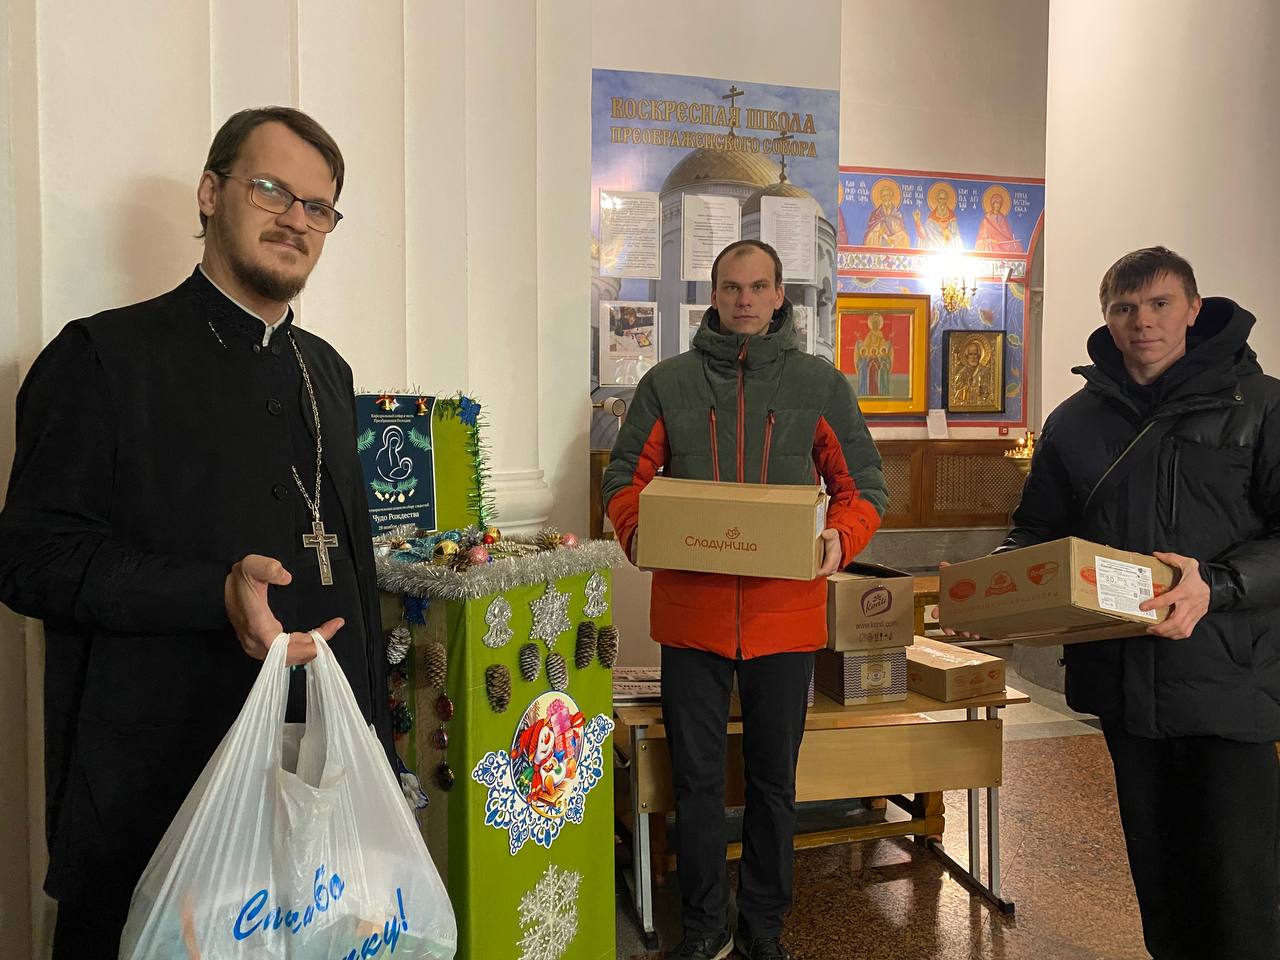 Организаторы автогонок пожертвовали 8 коробок сладостей для акции "Чудо Рождества Христова"